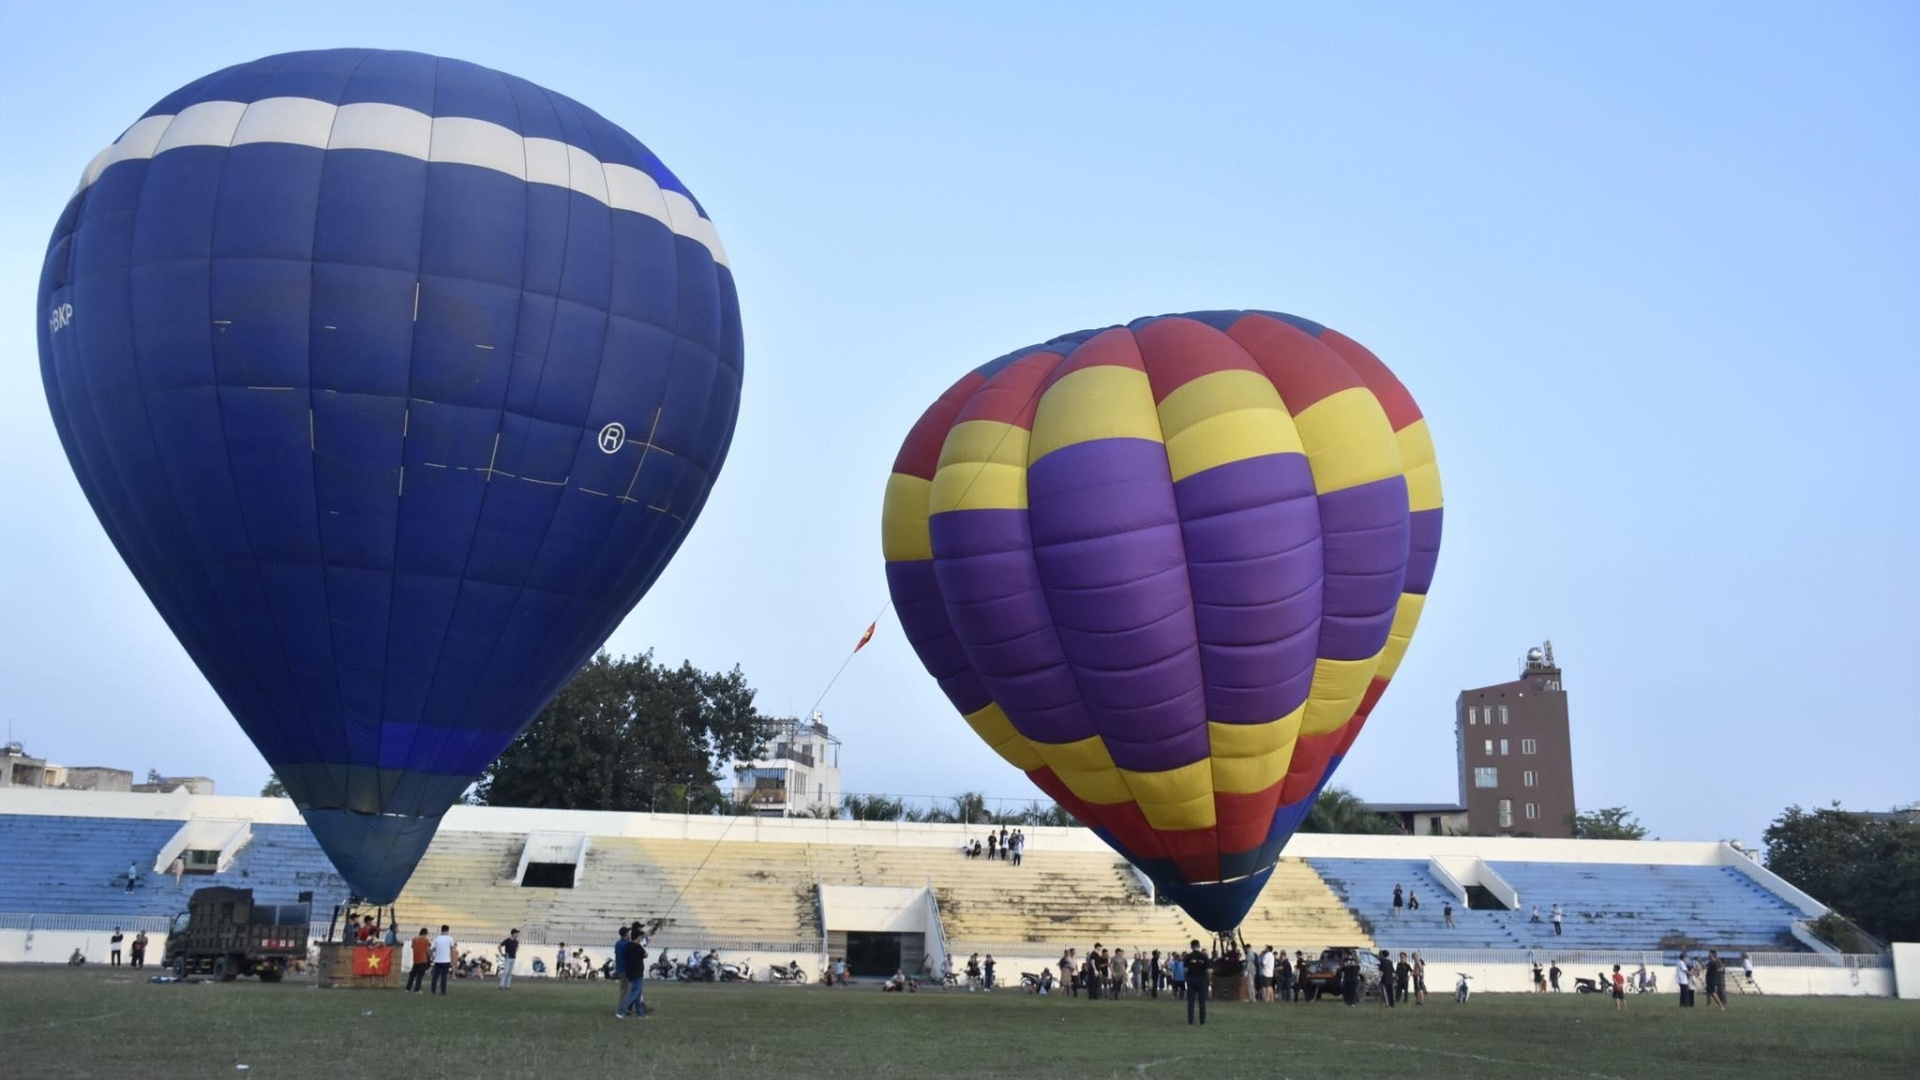 河内山西古城国际热气球节吸引许多游客前来参加